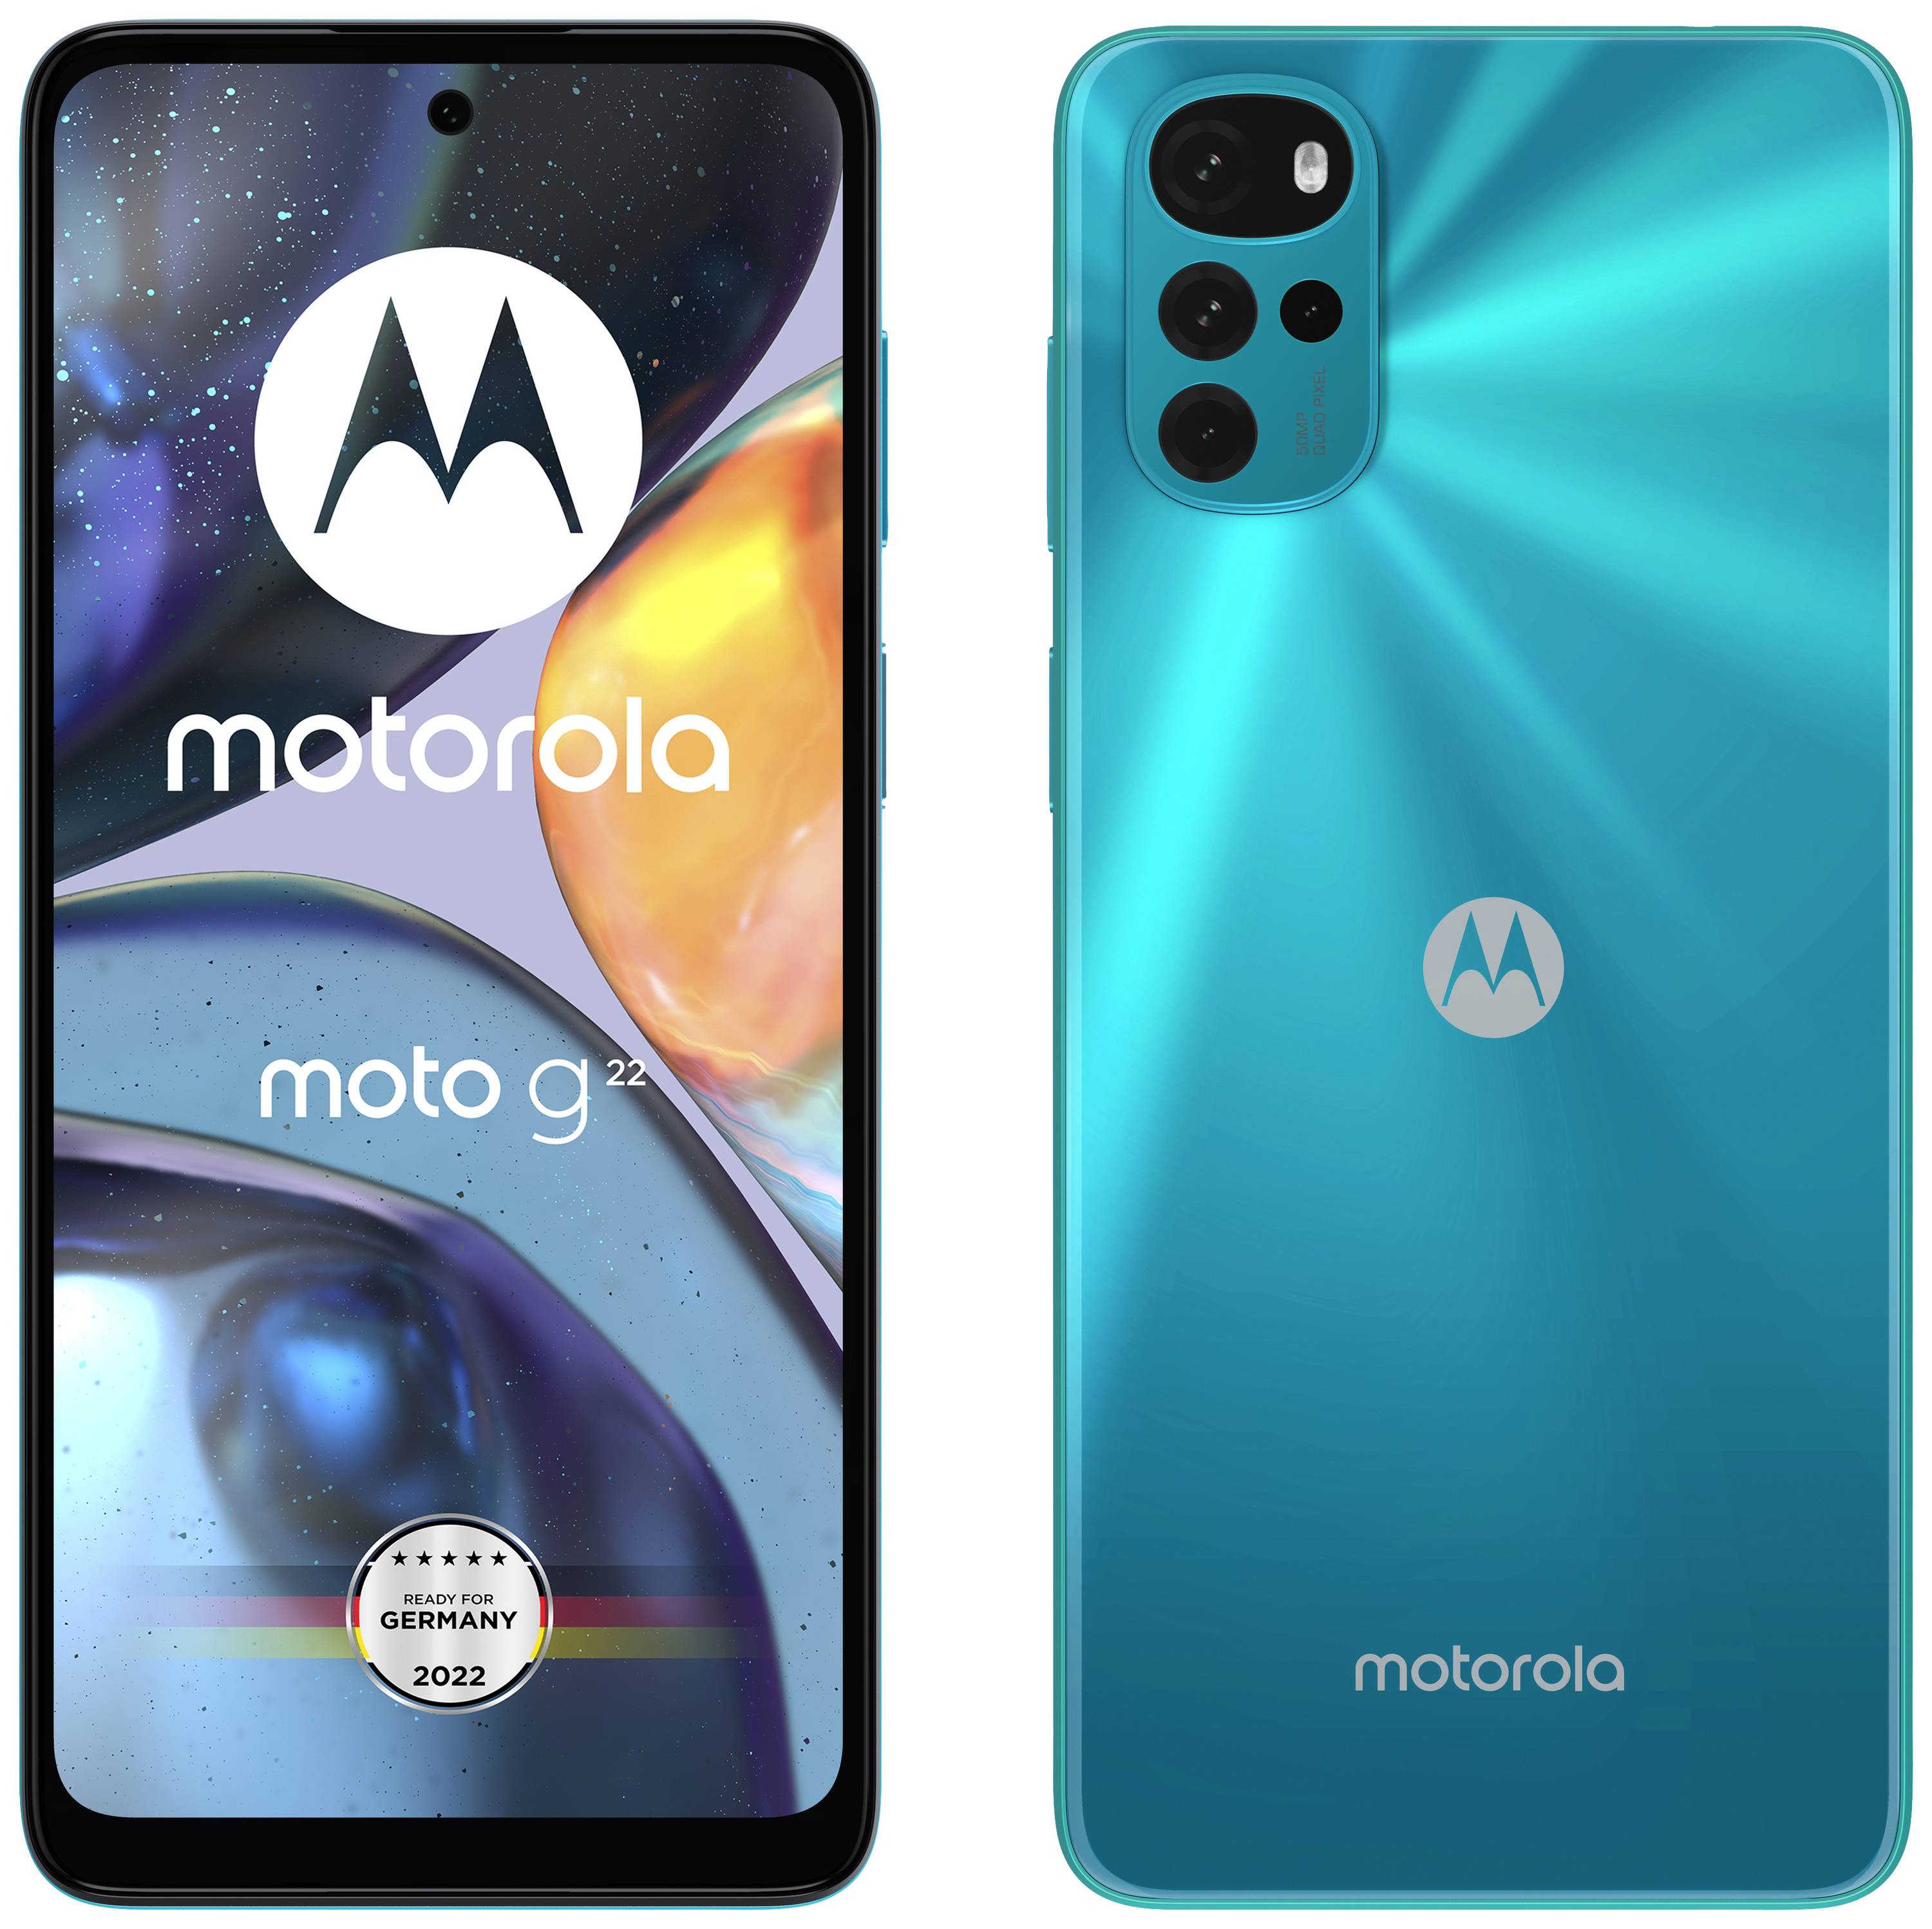 Doe het niet Manie vermijden Motorola moto g22 Smartphone 64 GB 16.5 cm (6.5 inch) IJsblauw Android 12  Dual-SIM kopen ? Conrad Electronic